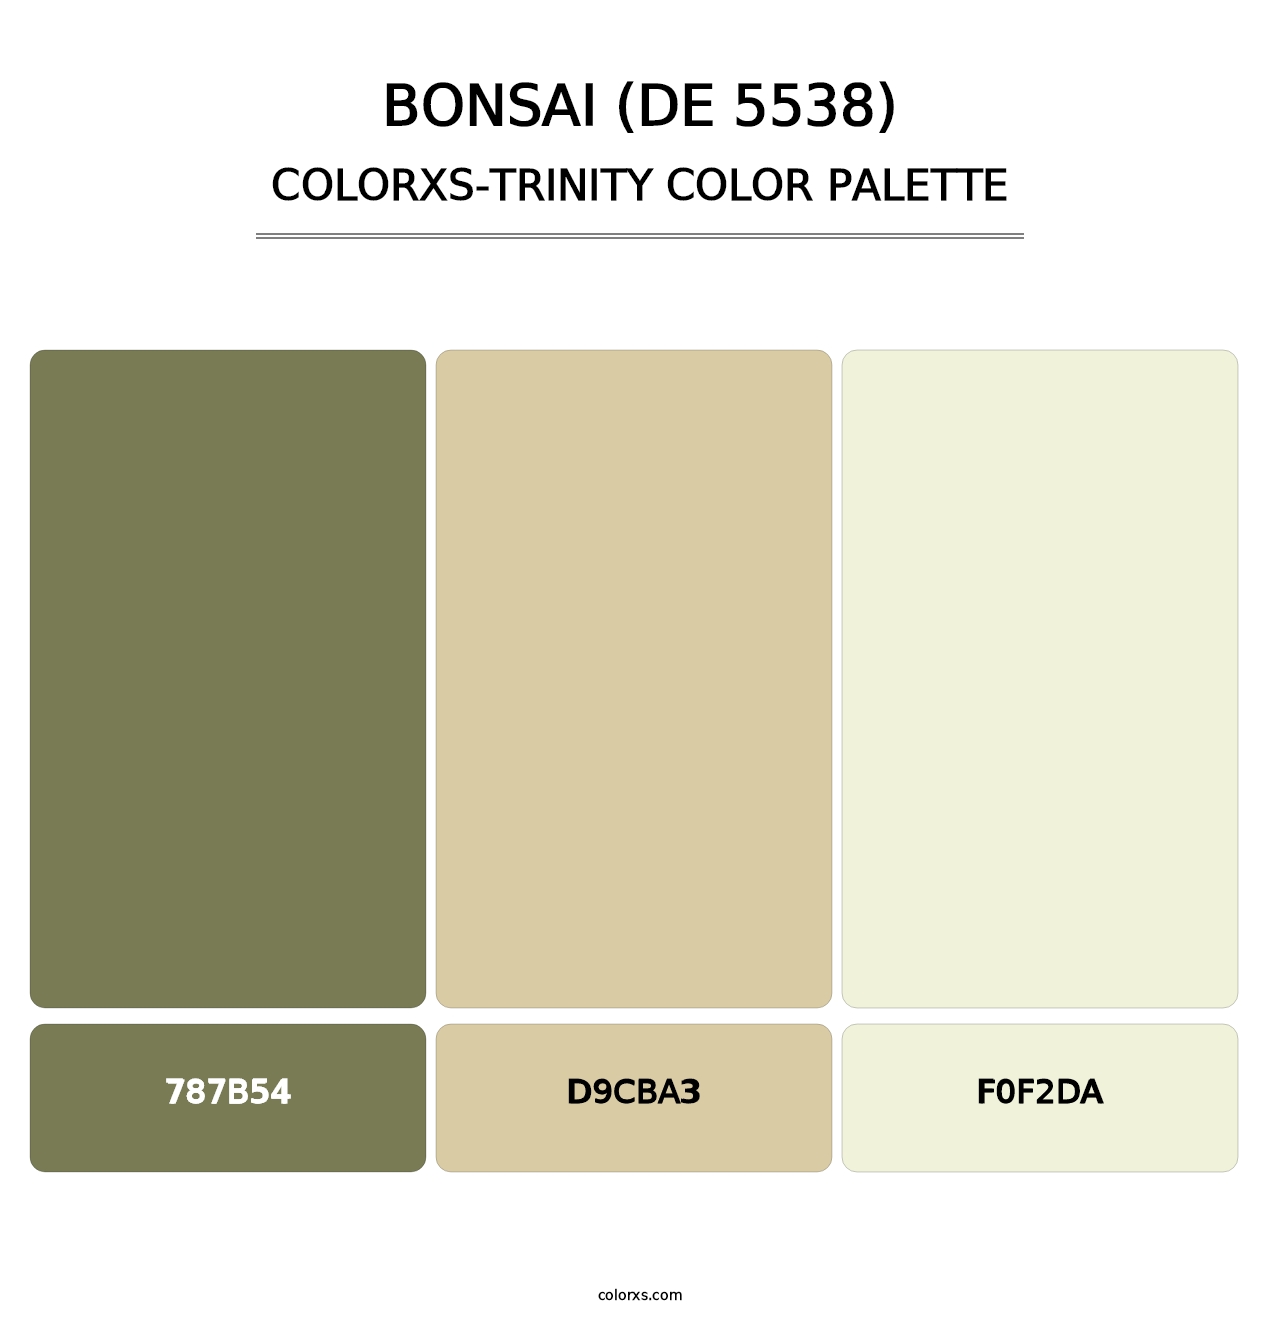 Bonsai (DE 5538) - Colorxs Trinity Palette